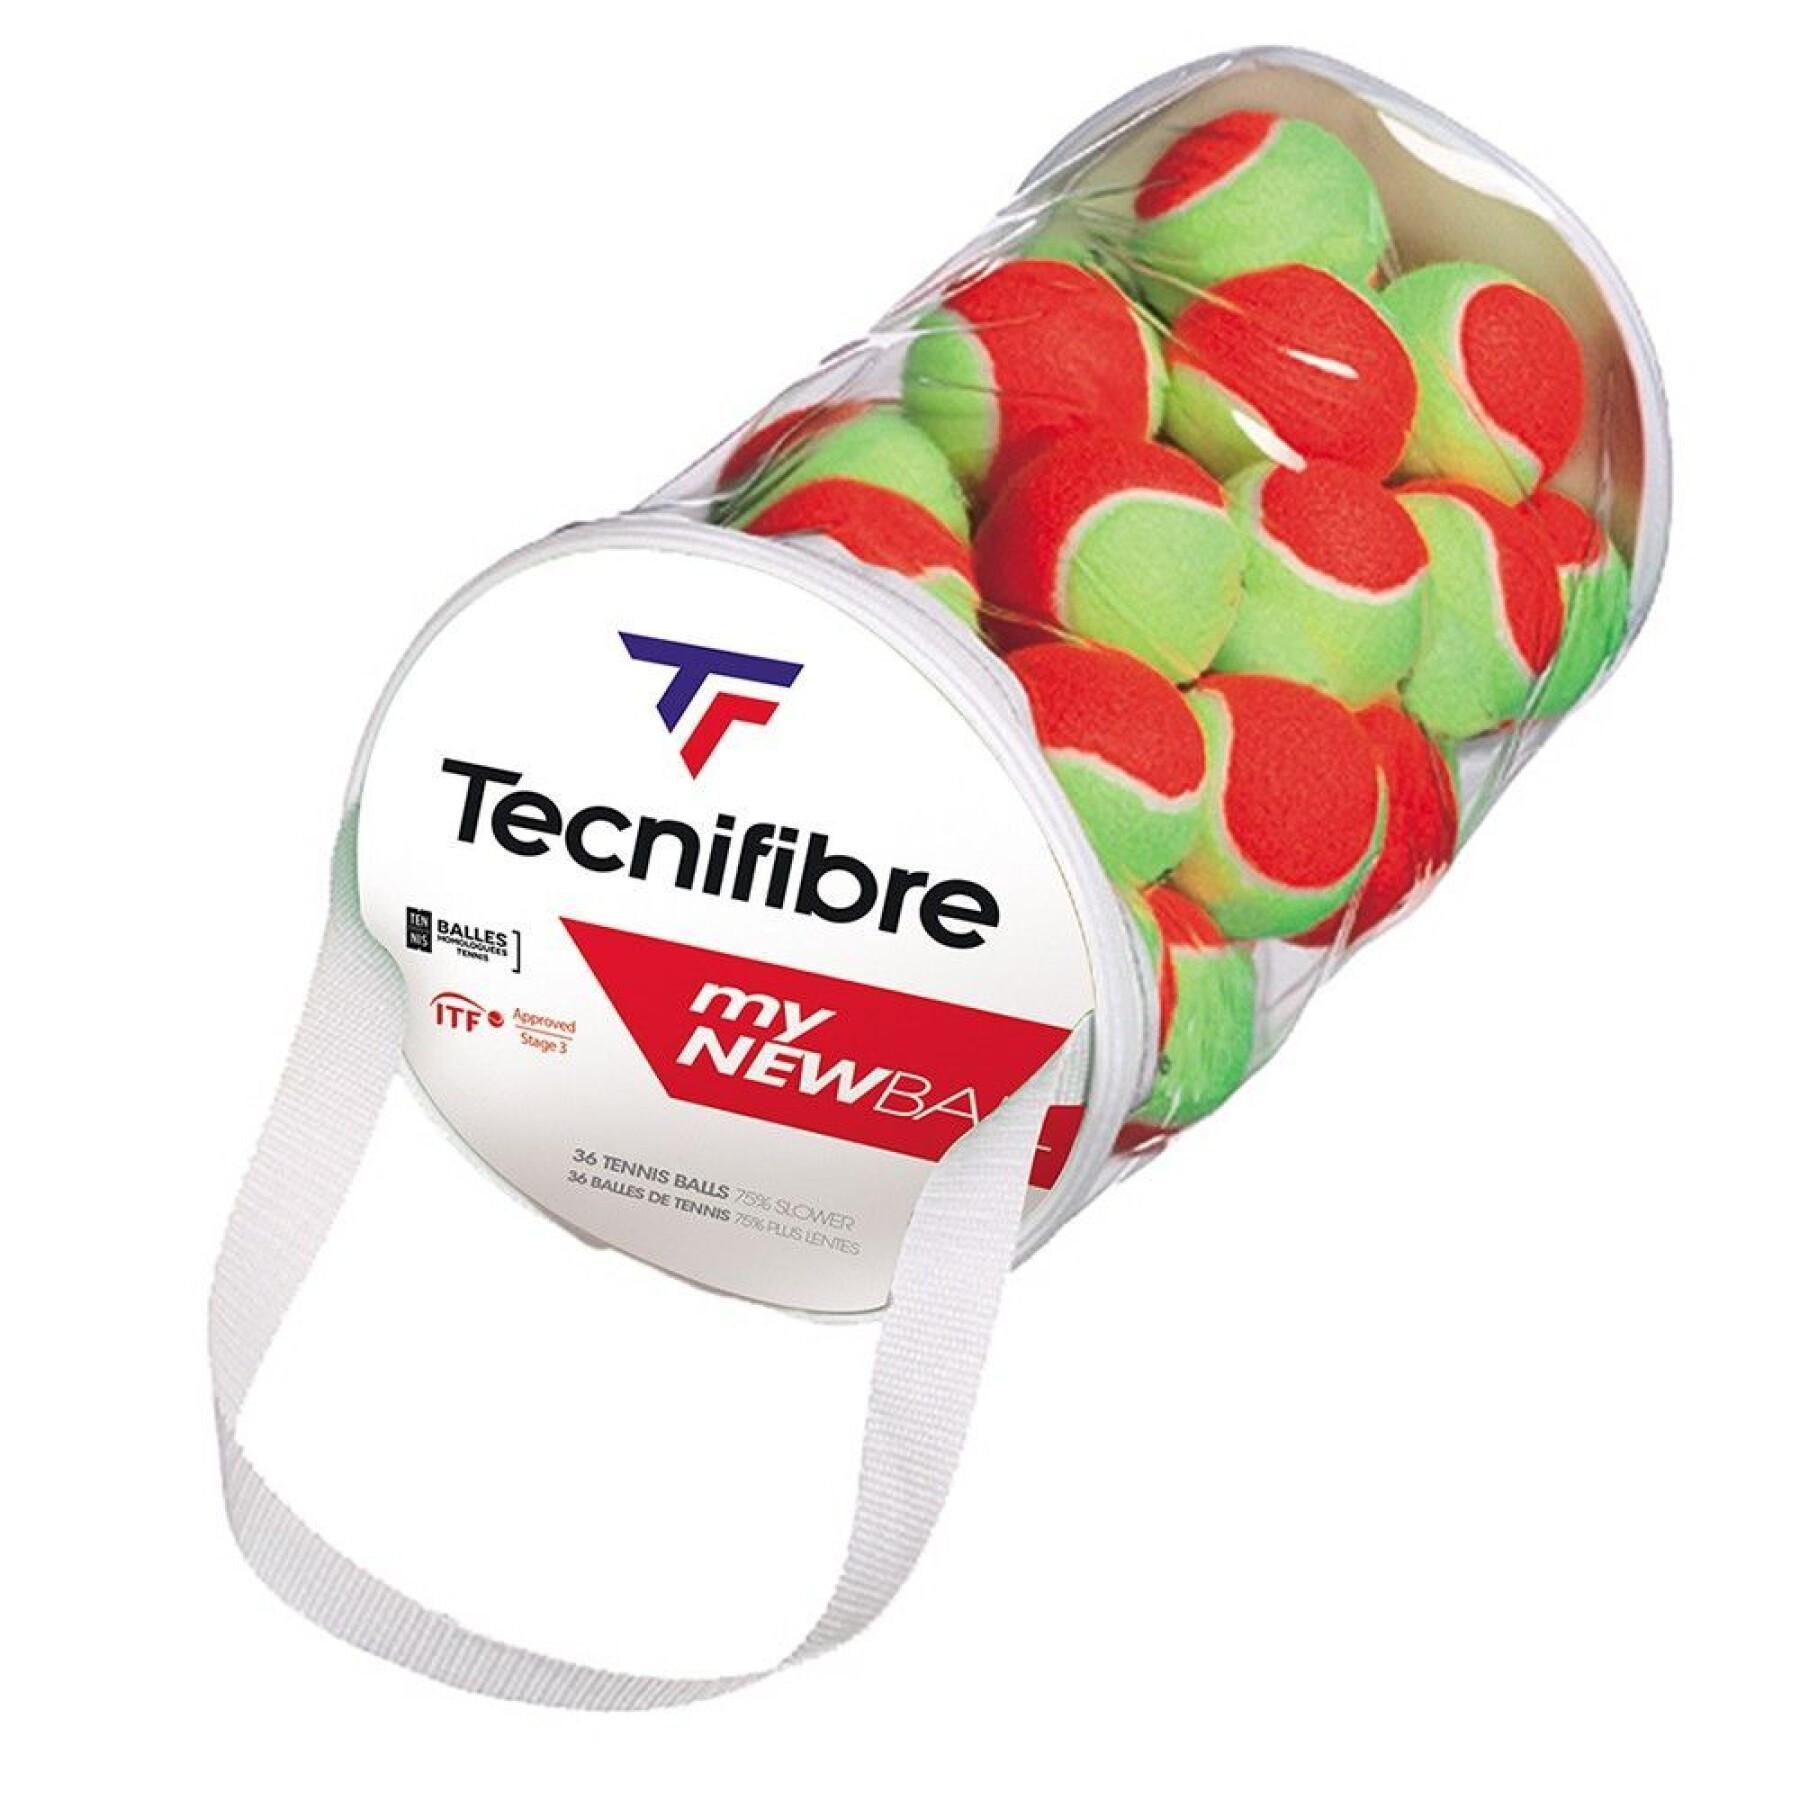 Zestaw 36 piłek tenisowych dla dzieci Tecnifibre My new ball